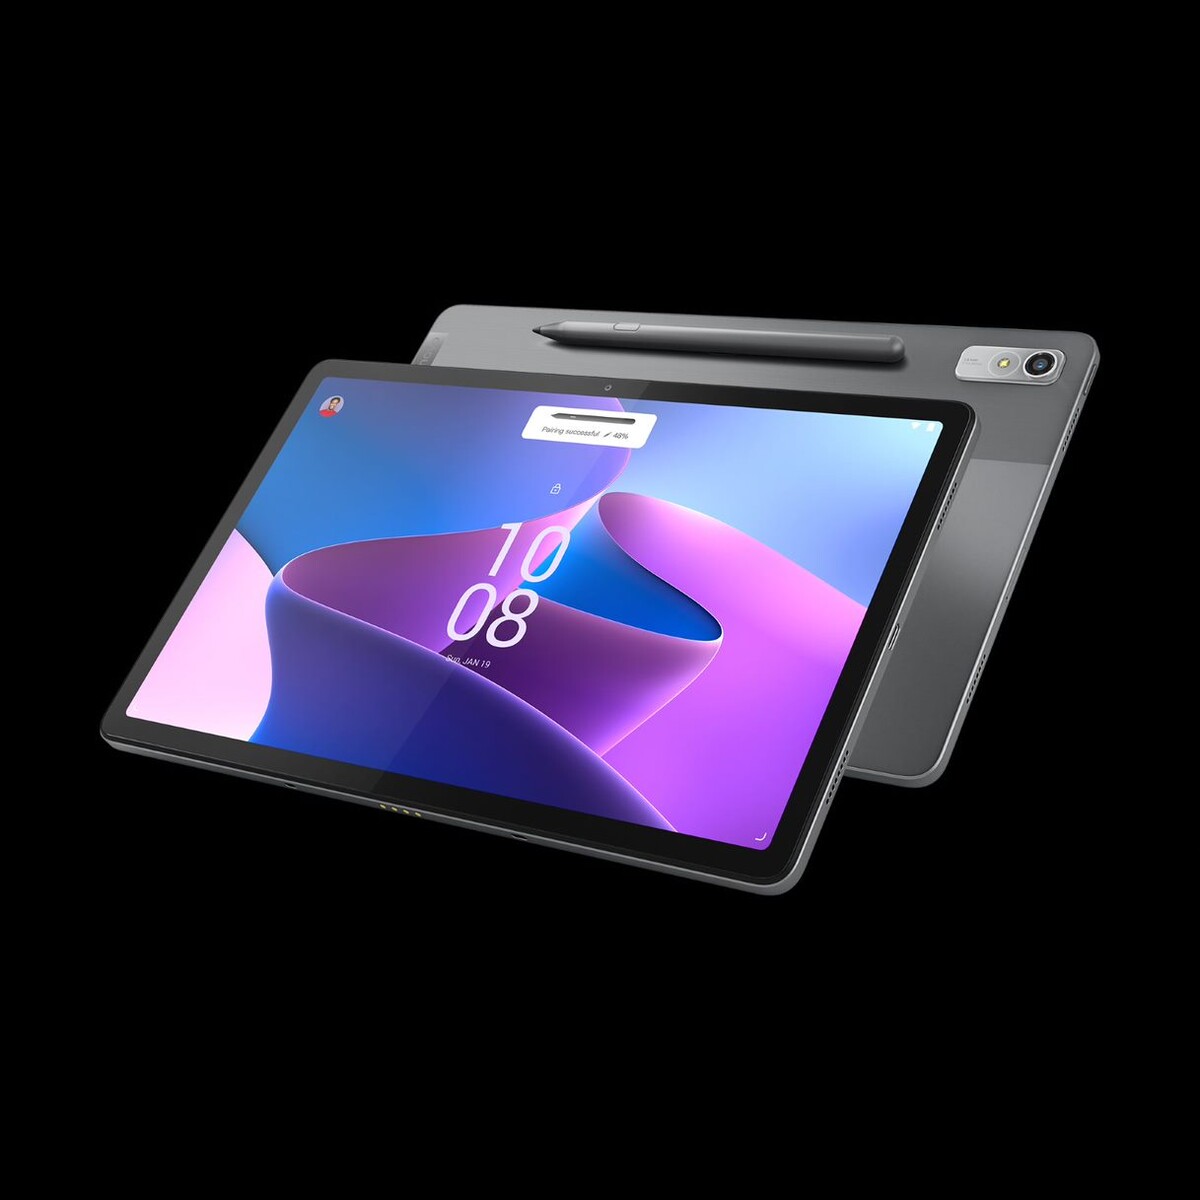 爆買い！】 Lenovo Tab P11 Pro 2nd Genタブレット 11.2インチ OLED Kompanio 1300T 6GB 128GB 